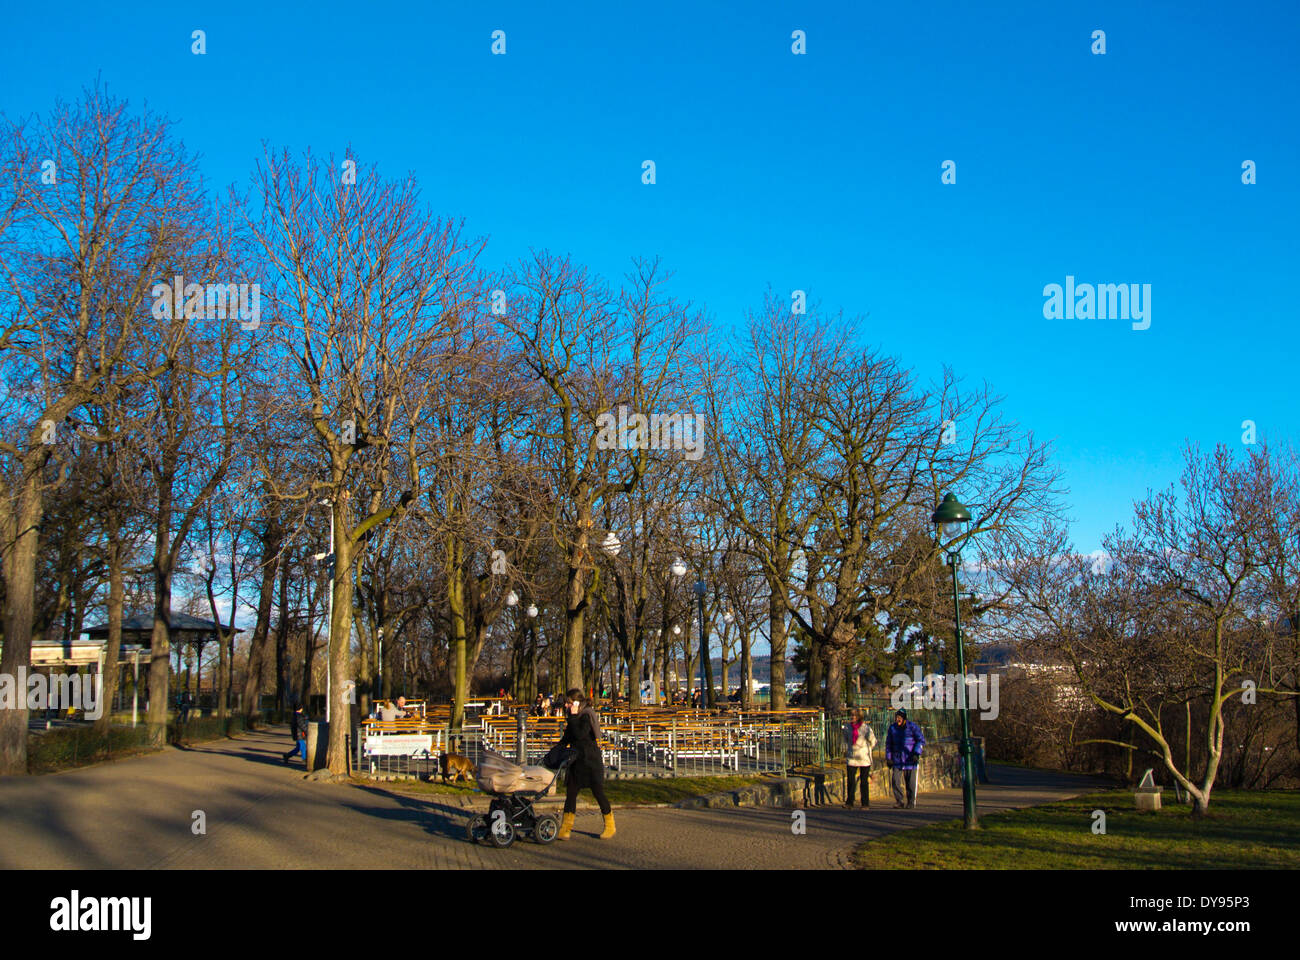 Letenske Sady park, hiver, district de Bubenec, Prague, République Tchèque, Europe Banque D'Images